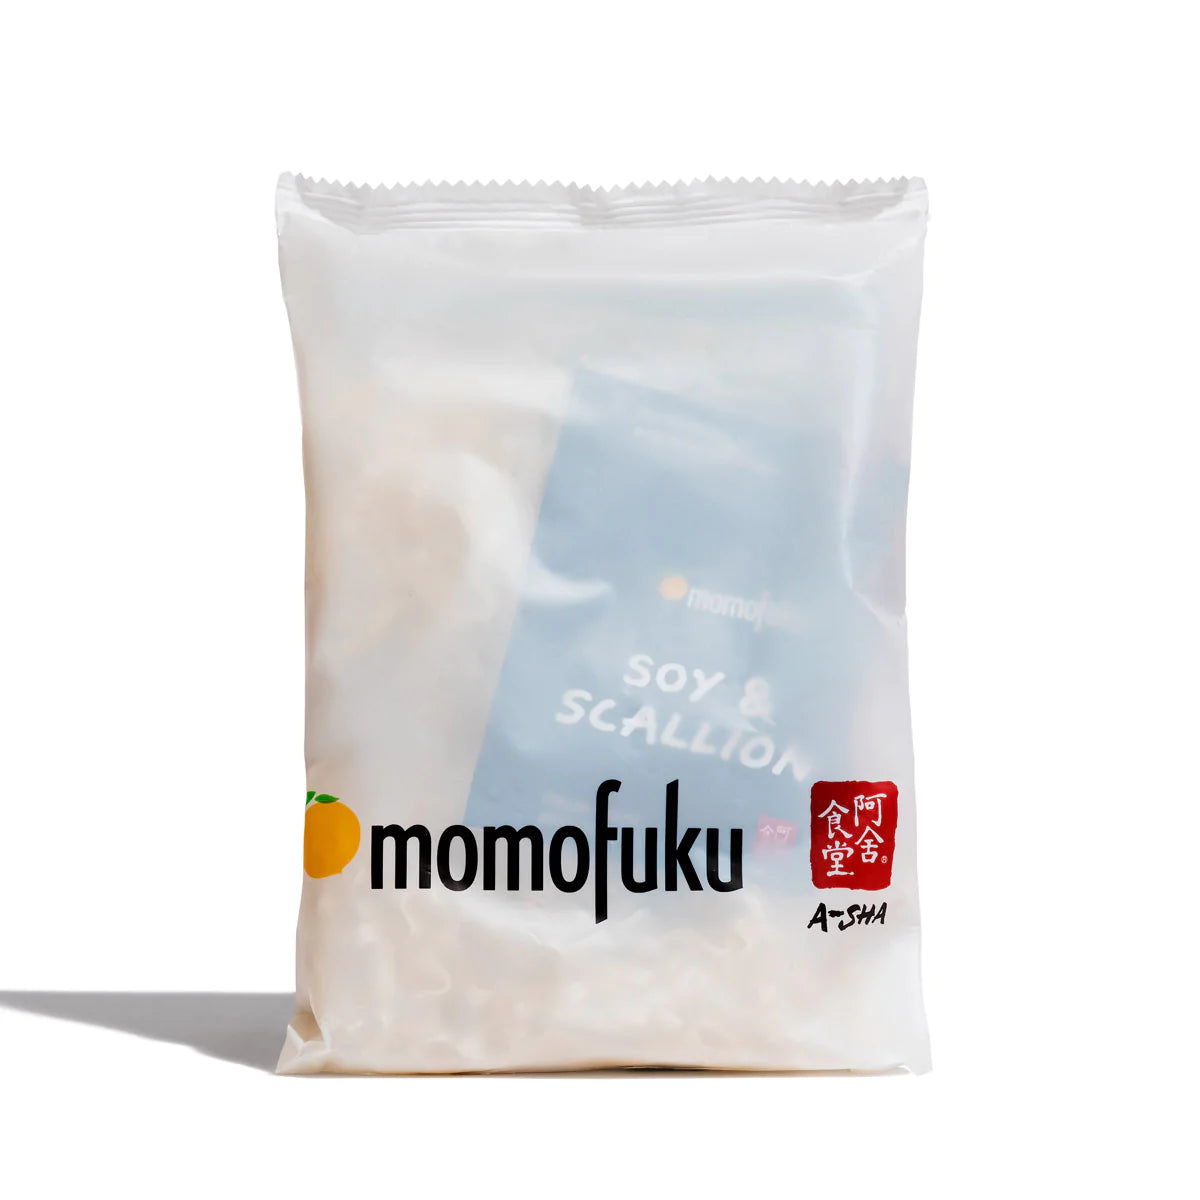 Momofuku Soy and Scallion Noodles Single Packet